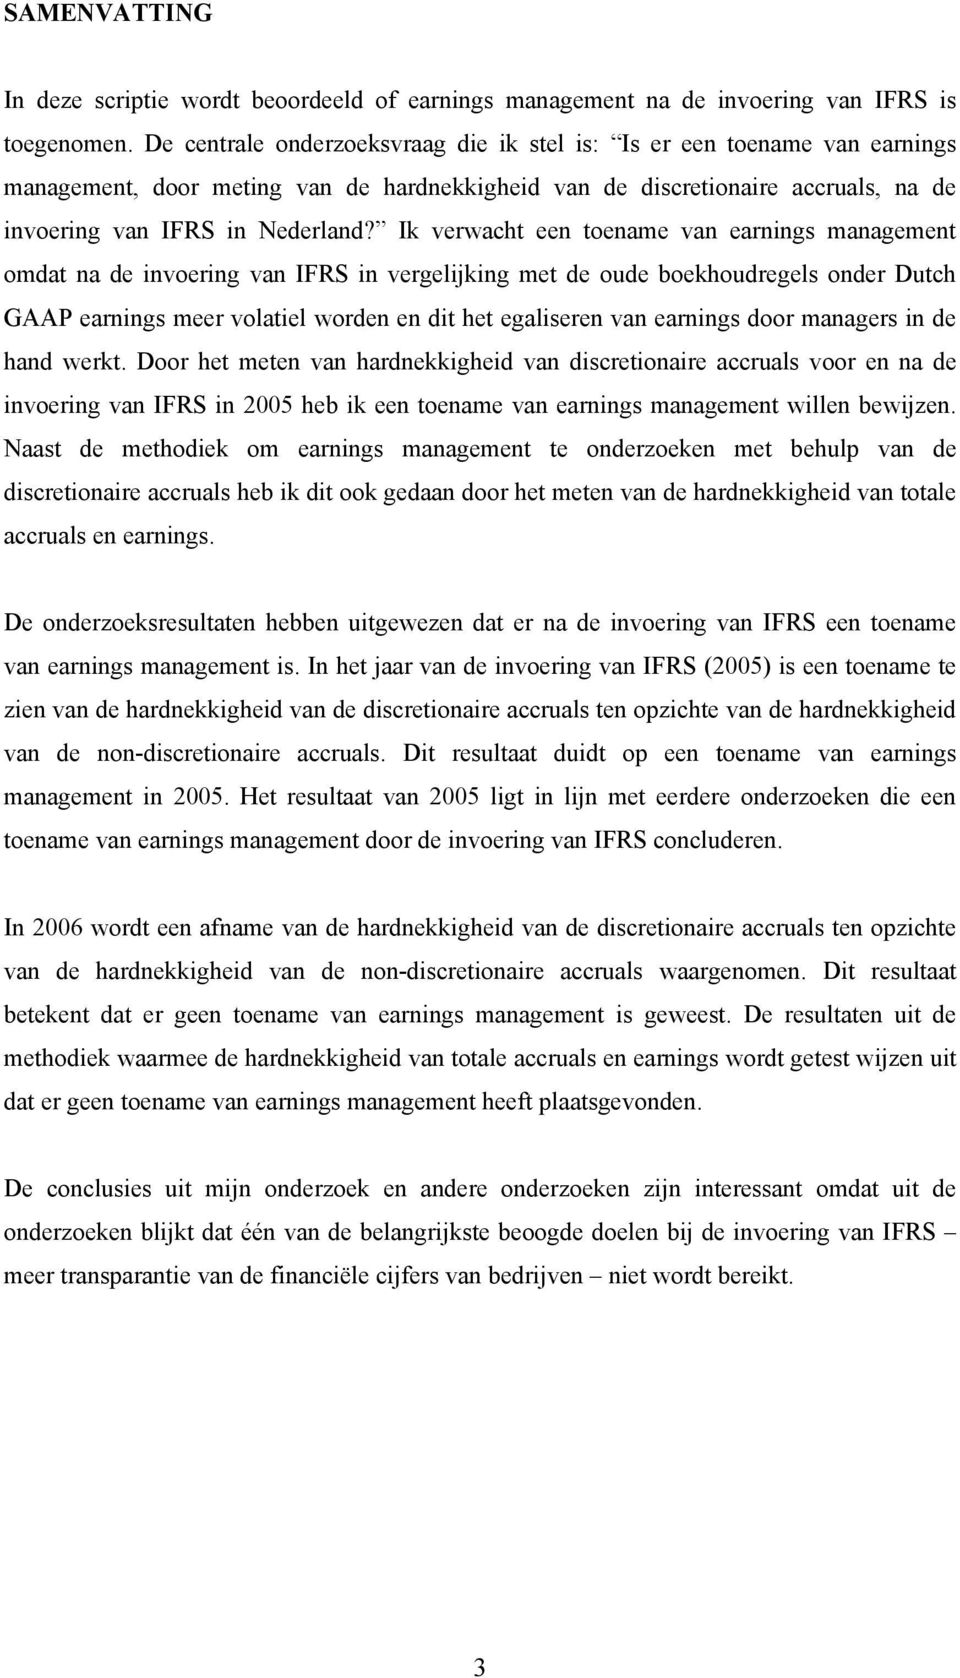 Ik verwacht een toename van earnings management omdat na de invoering van IFRS in vergelijking met de oude boekhoudregels onder Dutch GAAP earnings meer volatiel worden en dit het egaliseren van